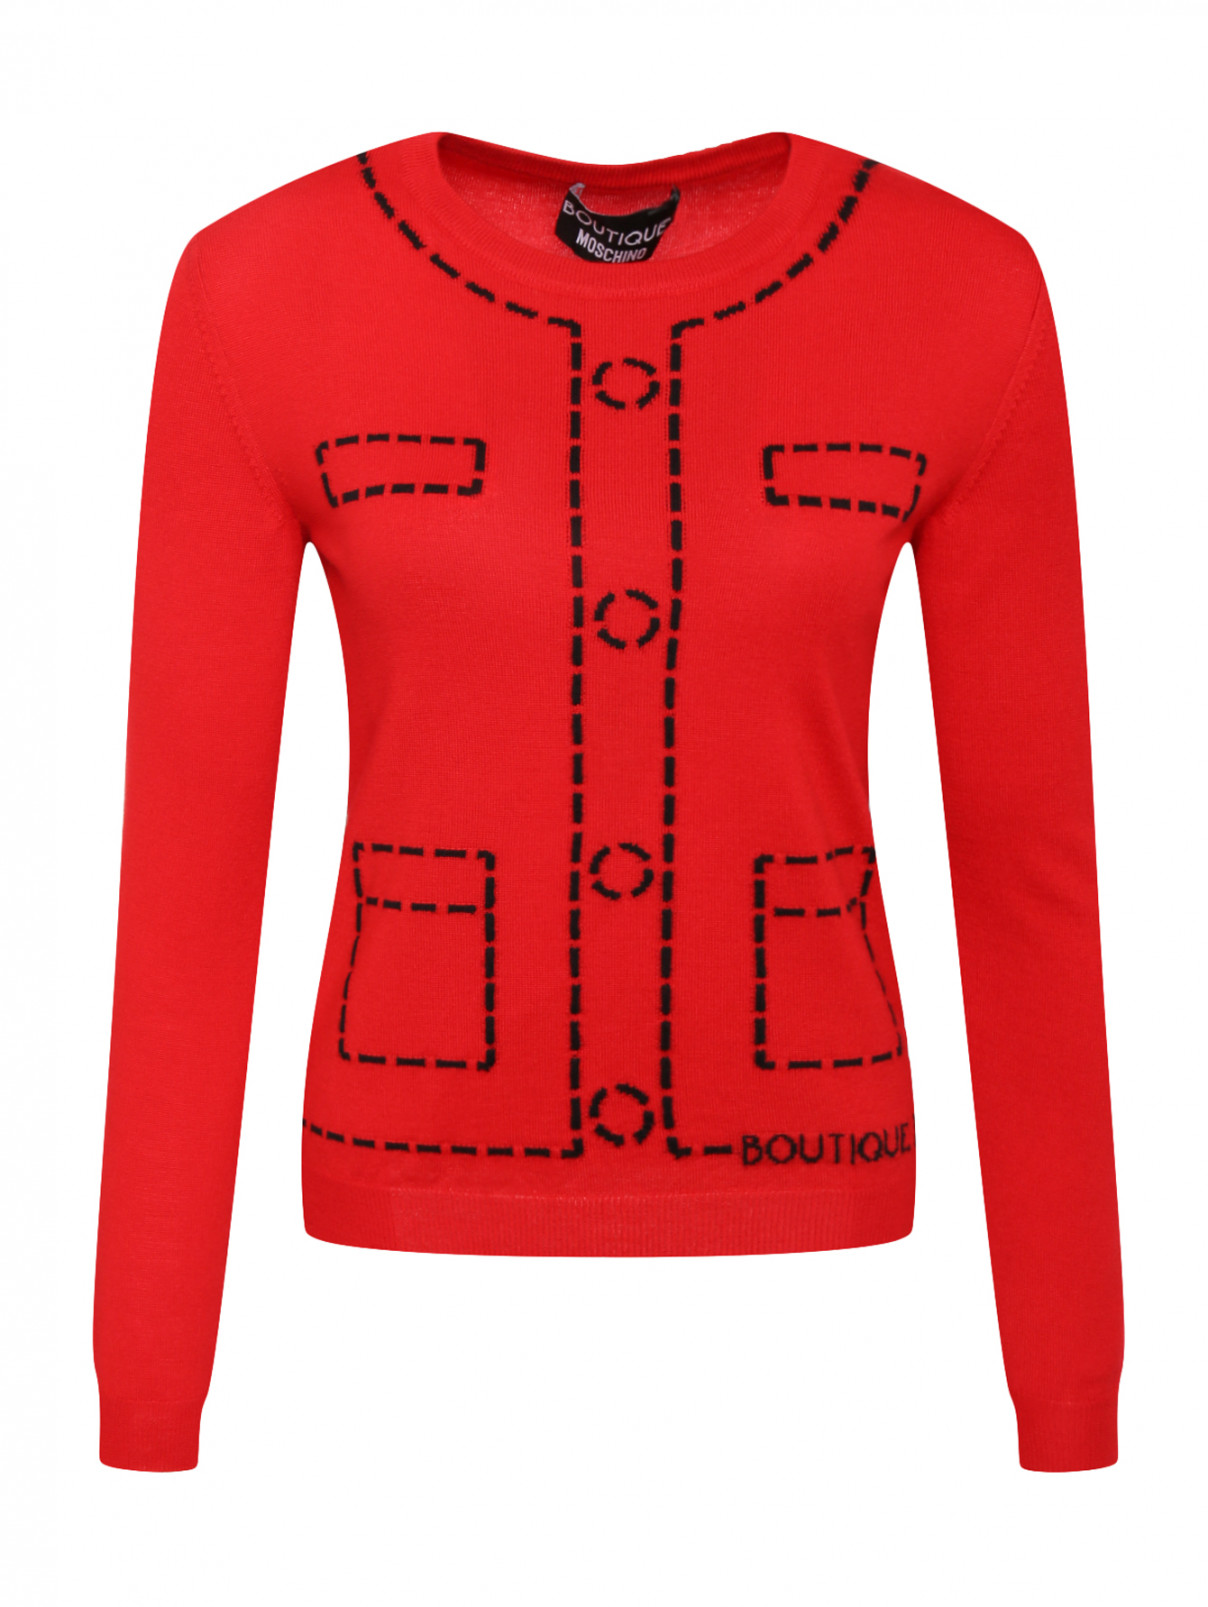 Джемпер из шерсти с узором Moschino Boutique  –  Общий вид  – Цвет:  Красный